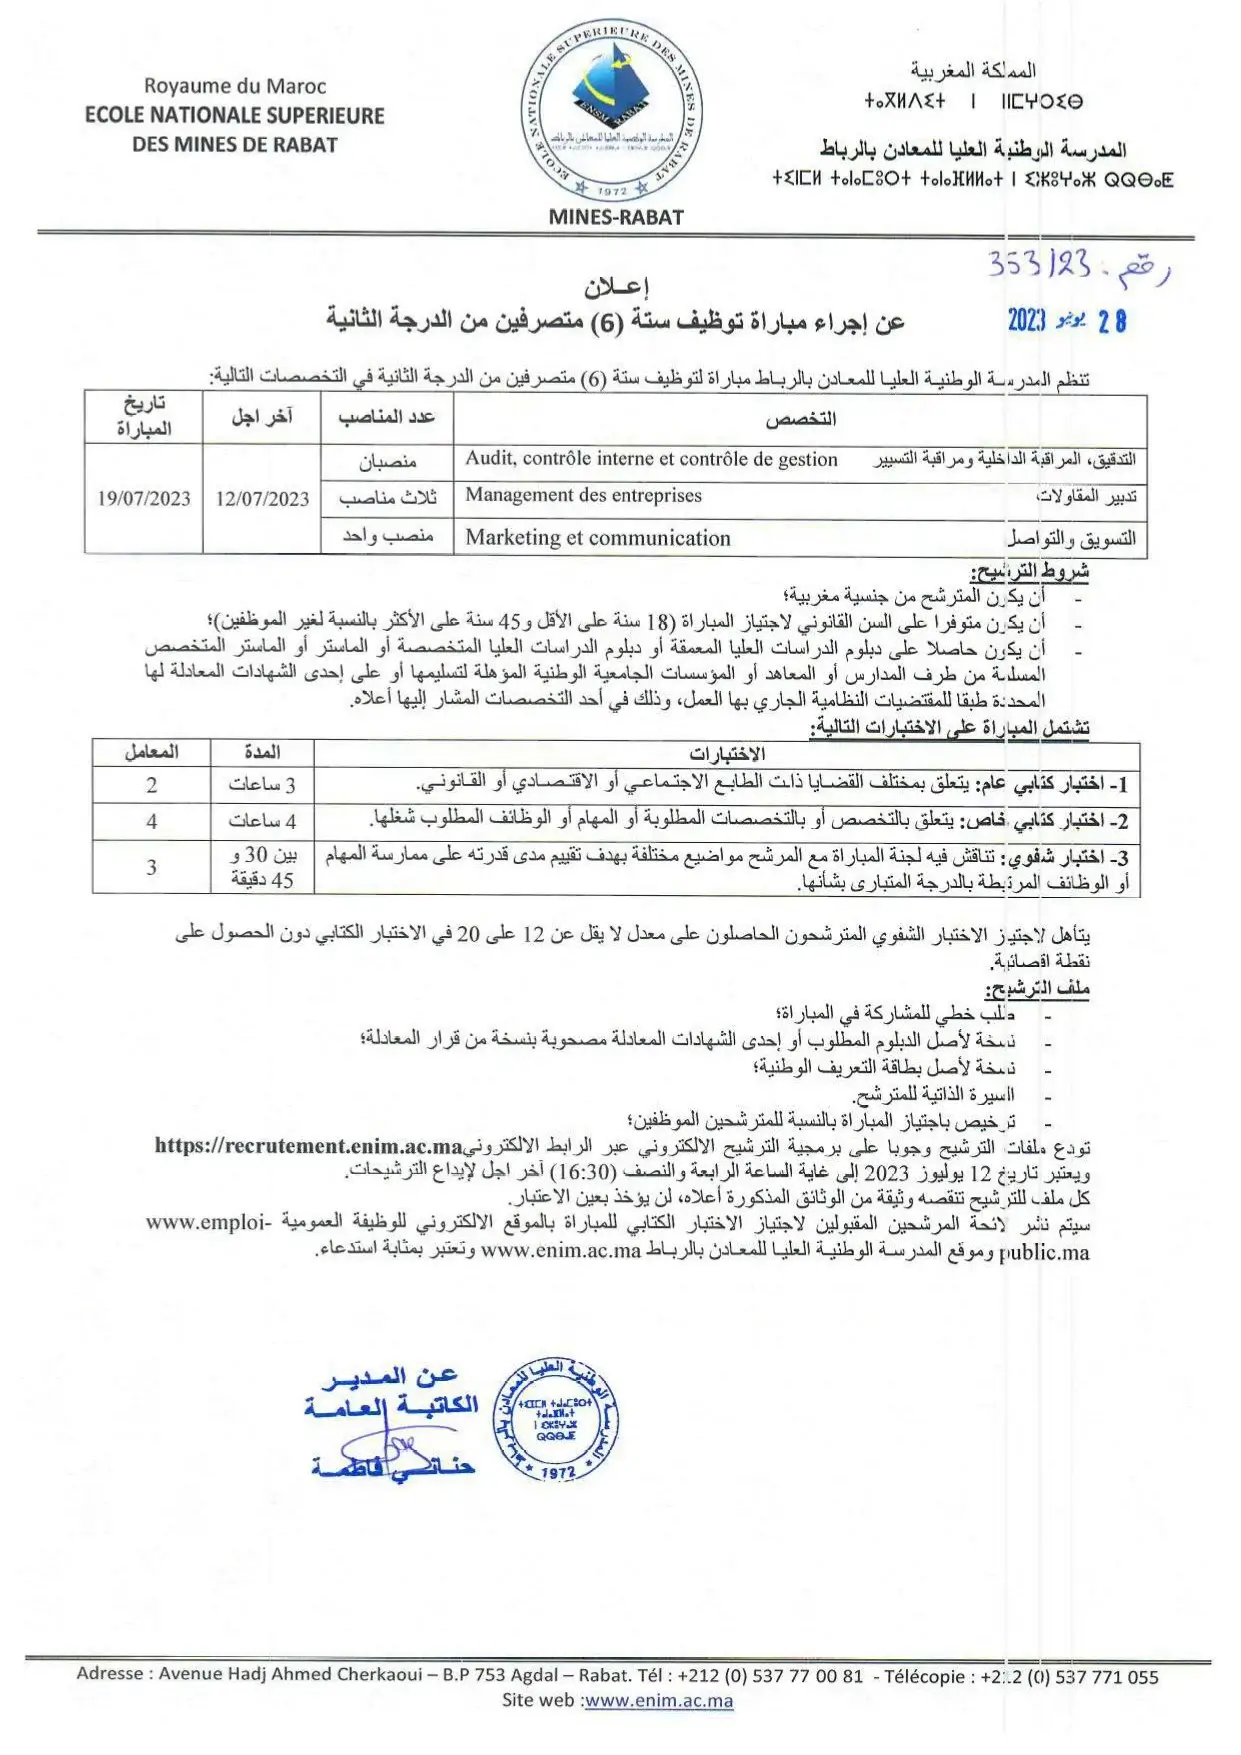 Concours Ecole Nationale Supérieure des Mines de Rabat (8 postes)